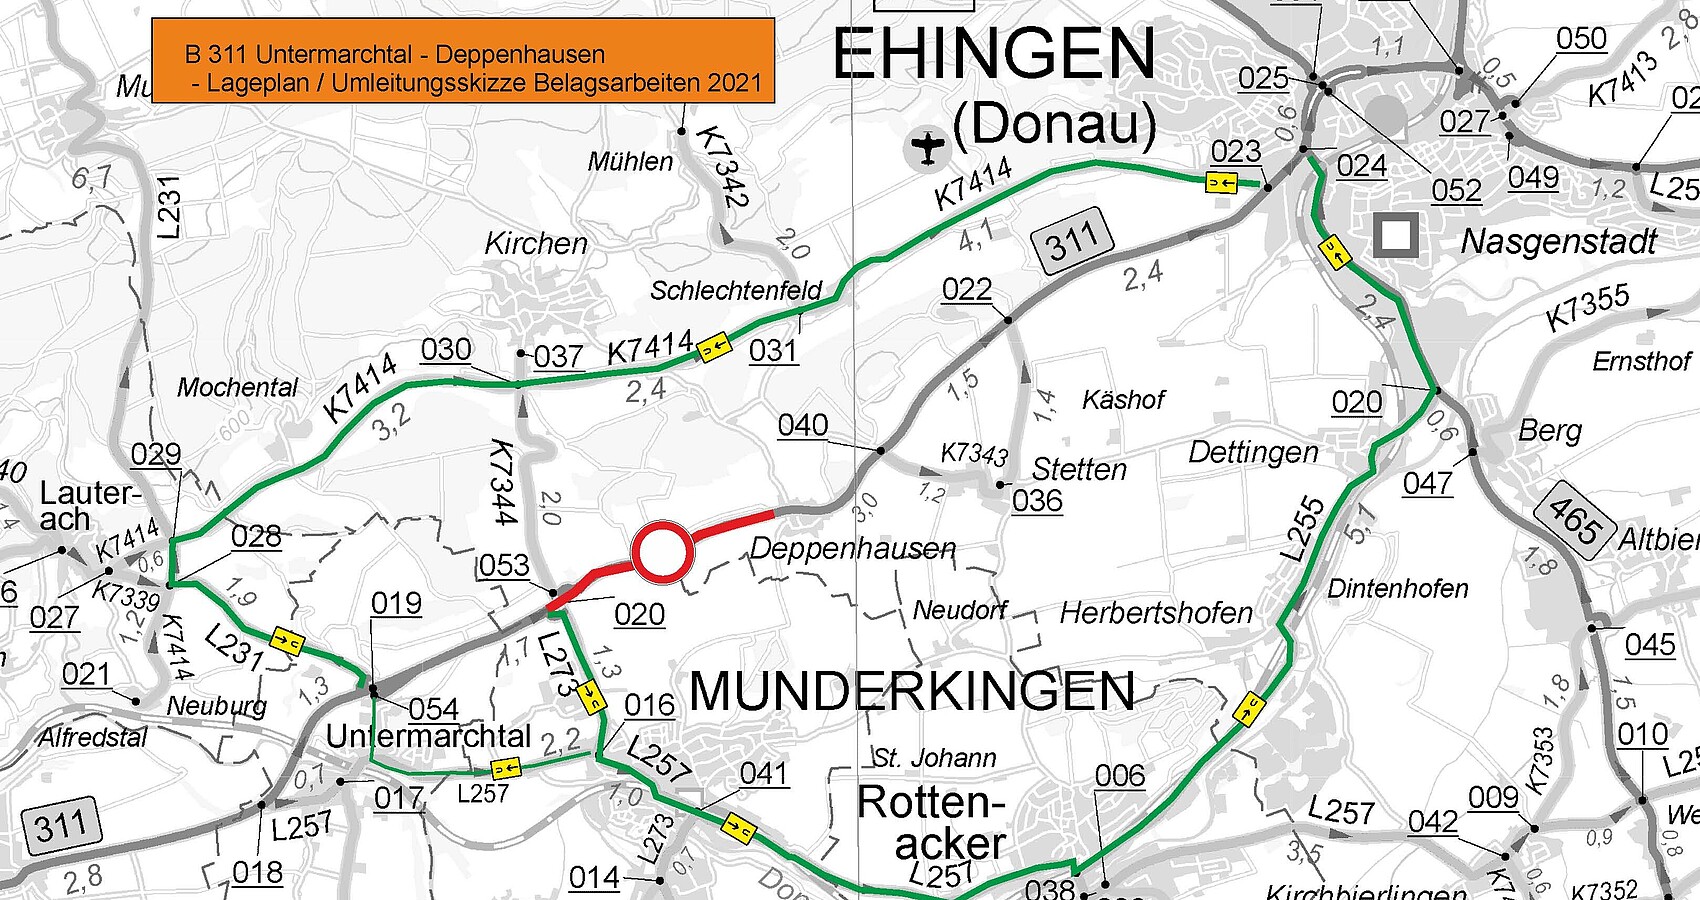 Umleitungsskizze/Lageplan B 311 Untermarchtal - Deppenhausen